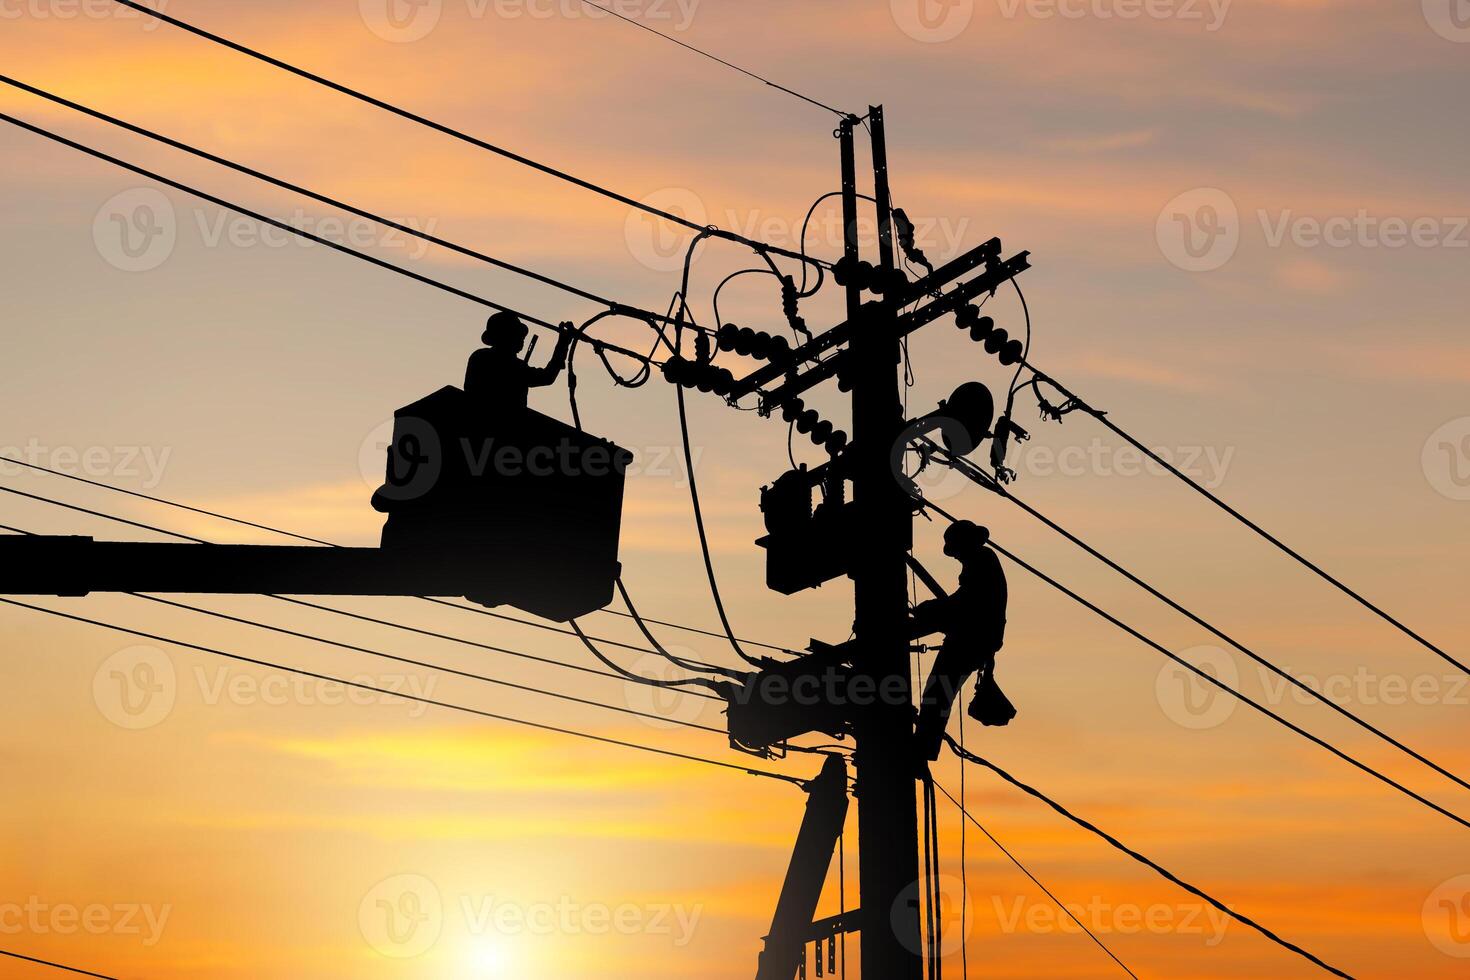 la silhouette d'un officier électricien grimpe sur un poteau et utilise un téléphérique pour entretenir un système de ligne à haute tension, l'ombre d'un électricien monteur réparateur au travail d'escalade sur un poteau électrique photo